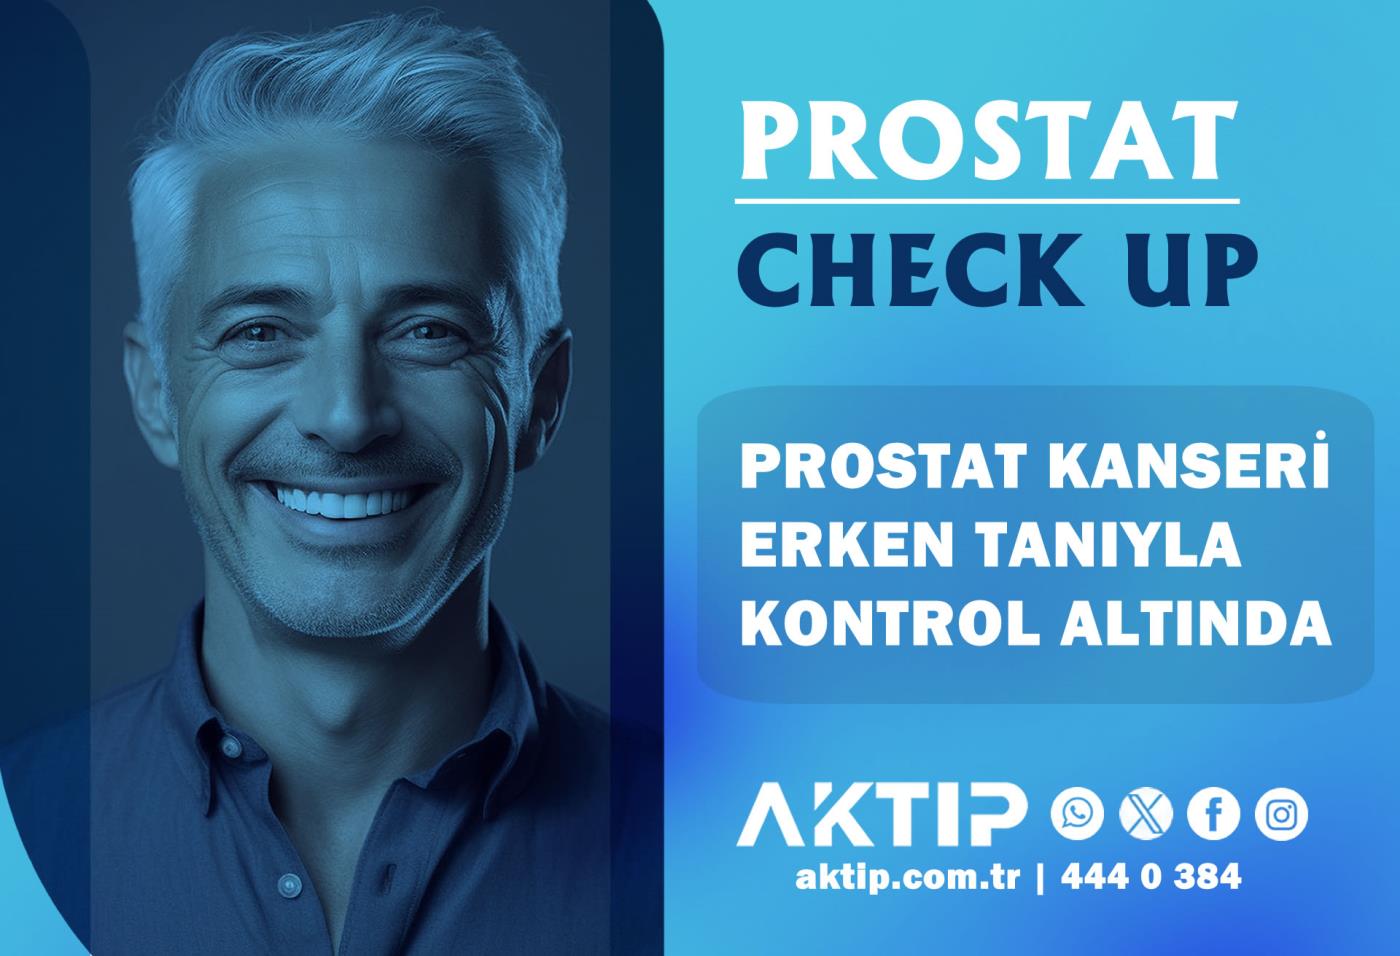 Prostat Check Up